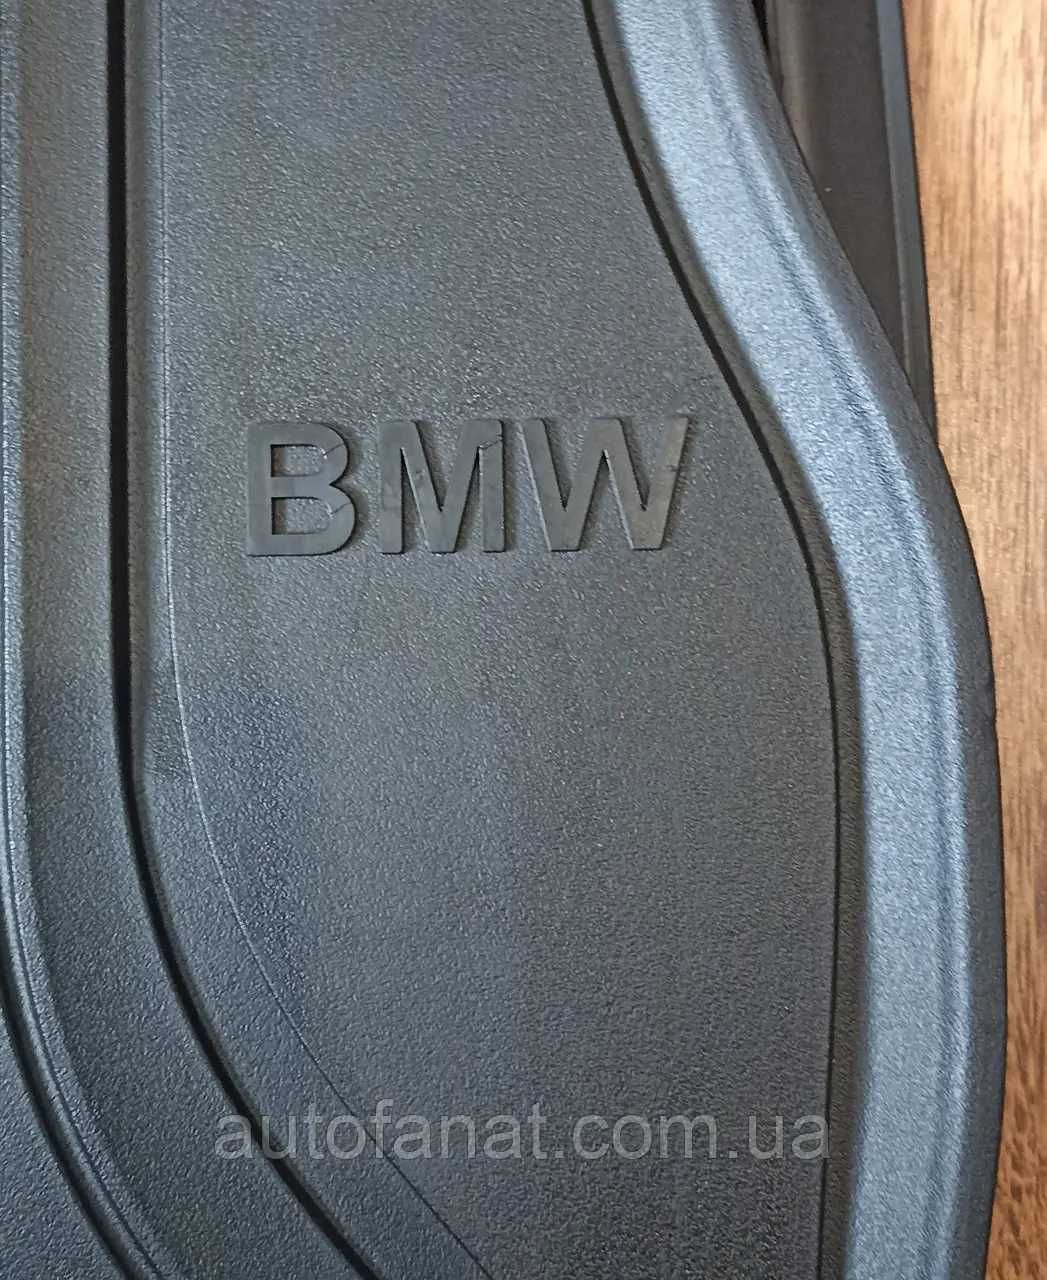 Коврики BMW 3 (F30, F34), 4 (F32), 1 (F20) Оригинал в салон бмв ф30